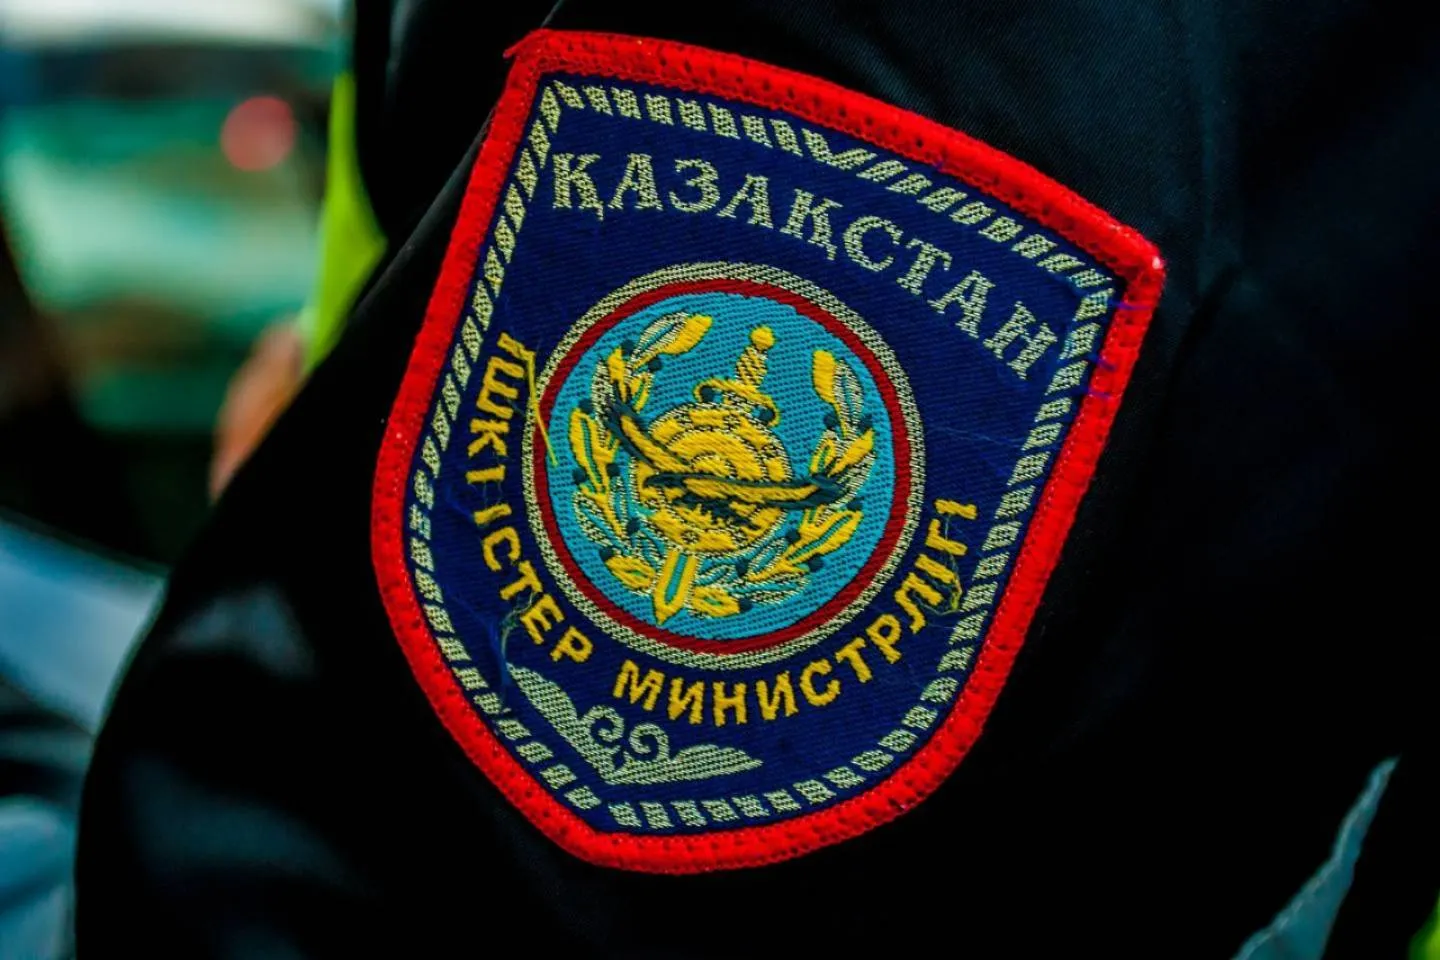 Происшествия в Казахстане и мире / Криминальные новости / Таксист рассказал, как подвозил предполагаемого убийцу Юрия Шумкова в Алматы